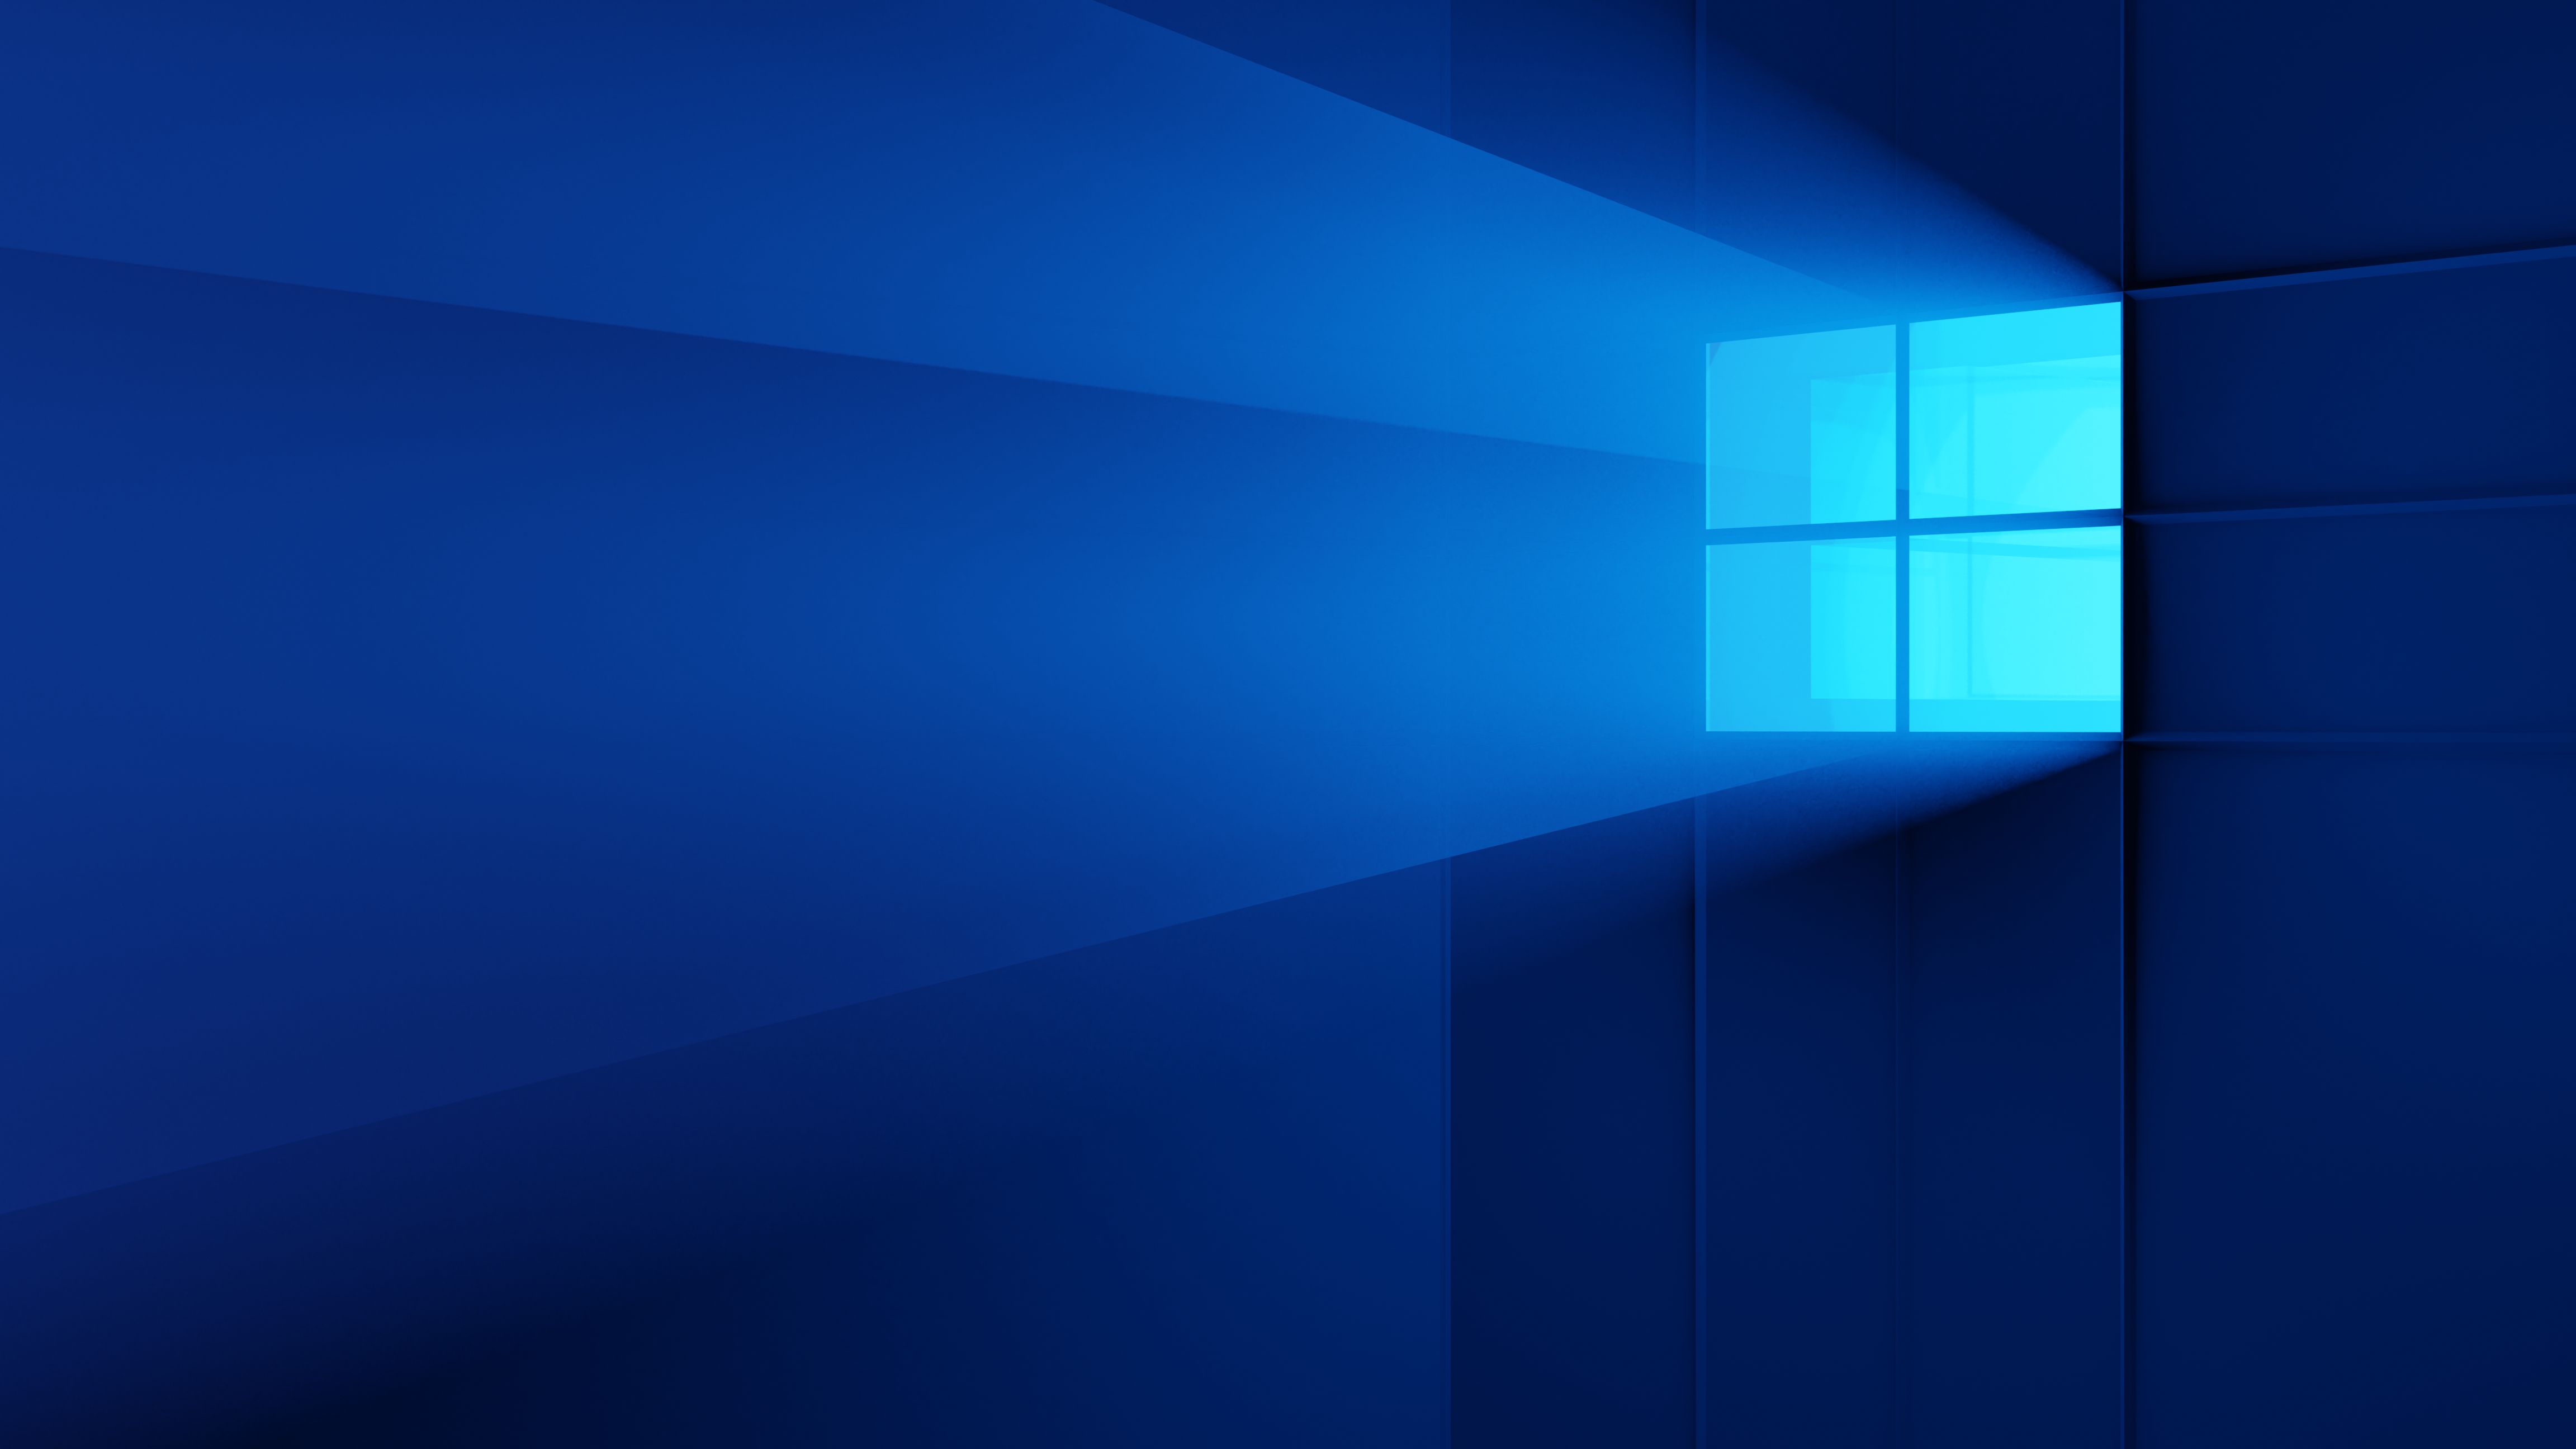 Скачать обои бесплатно Технологии, Windows 10, Окна картинка на рабочий стол ПК